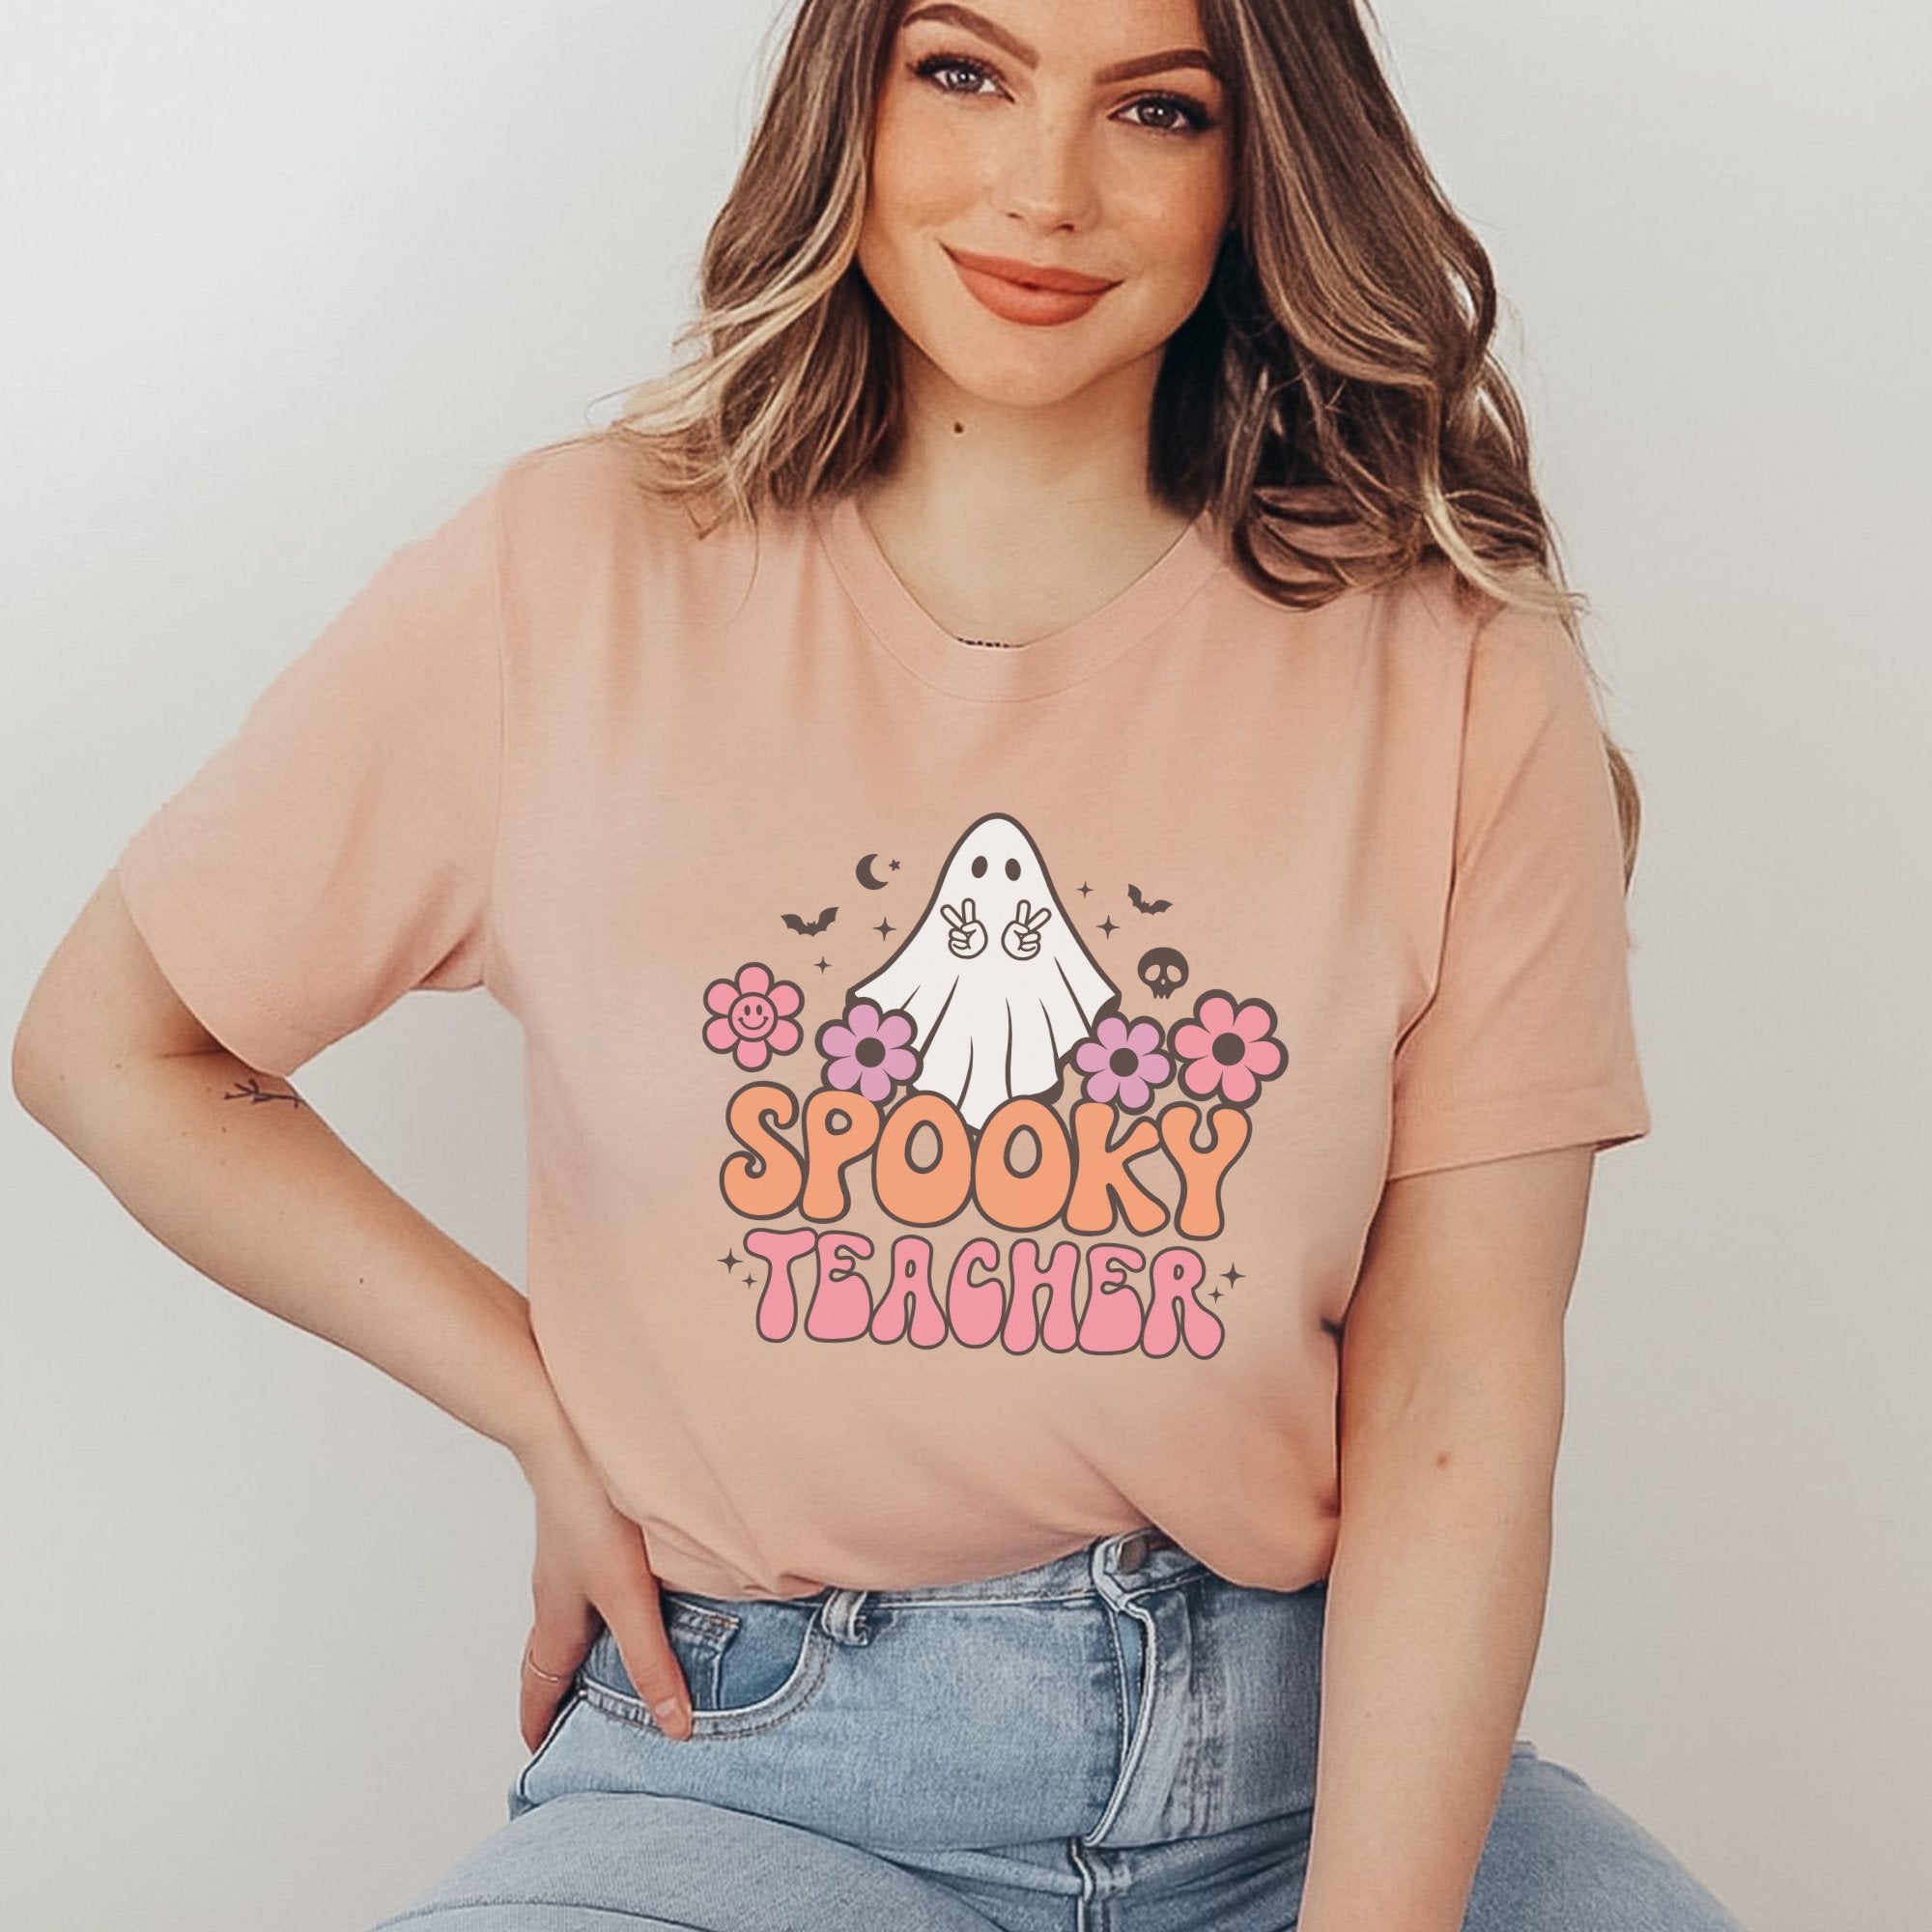 Spooky Teacher Printify